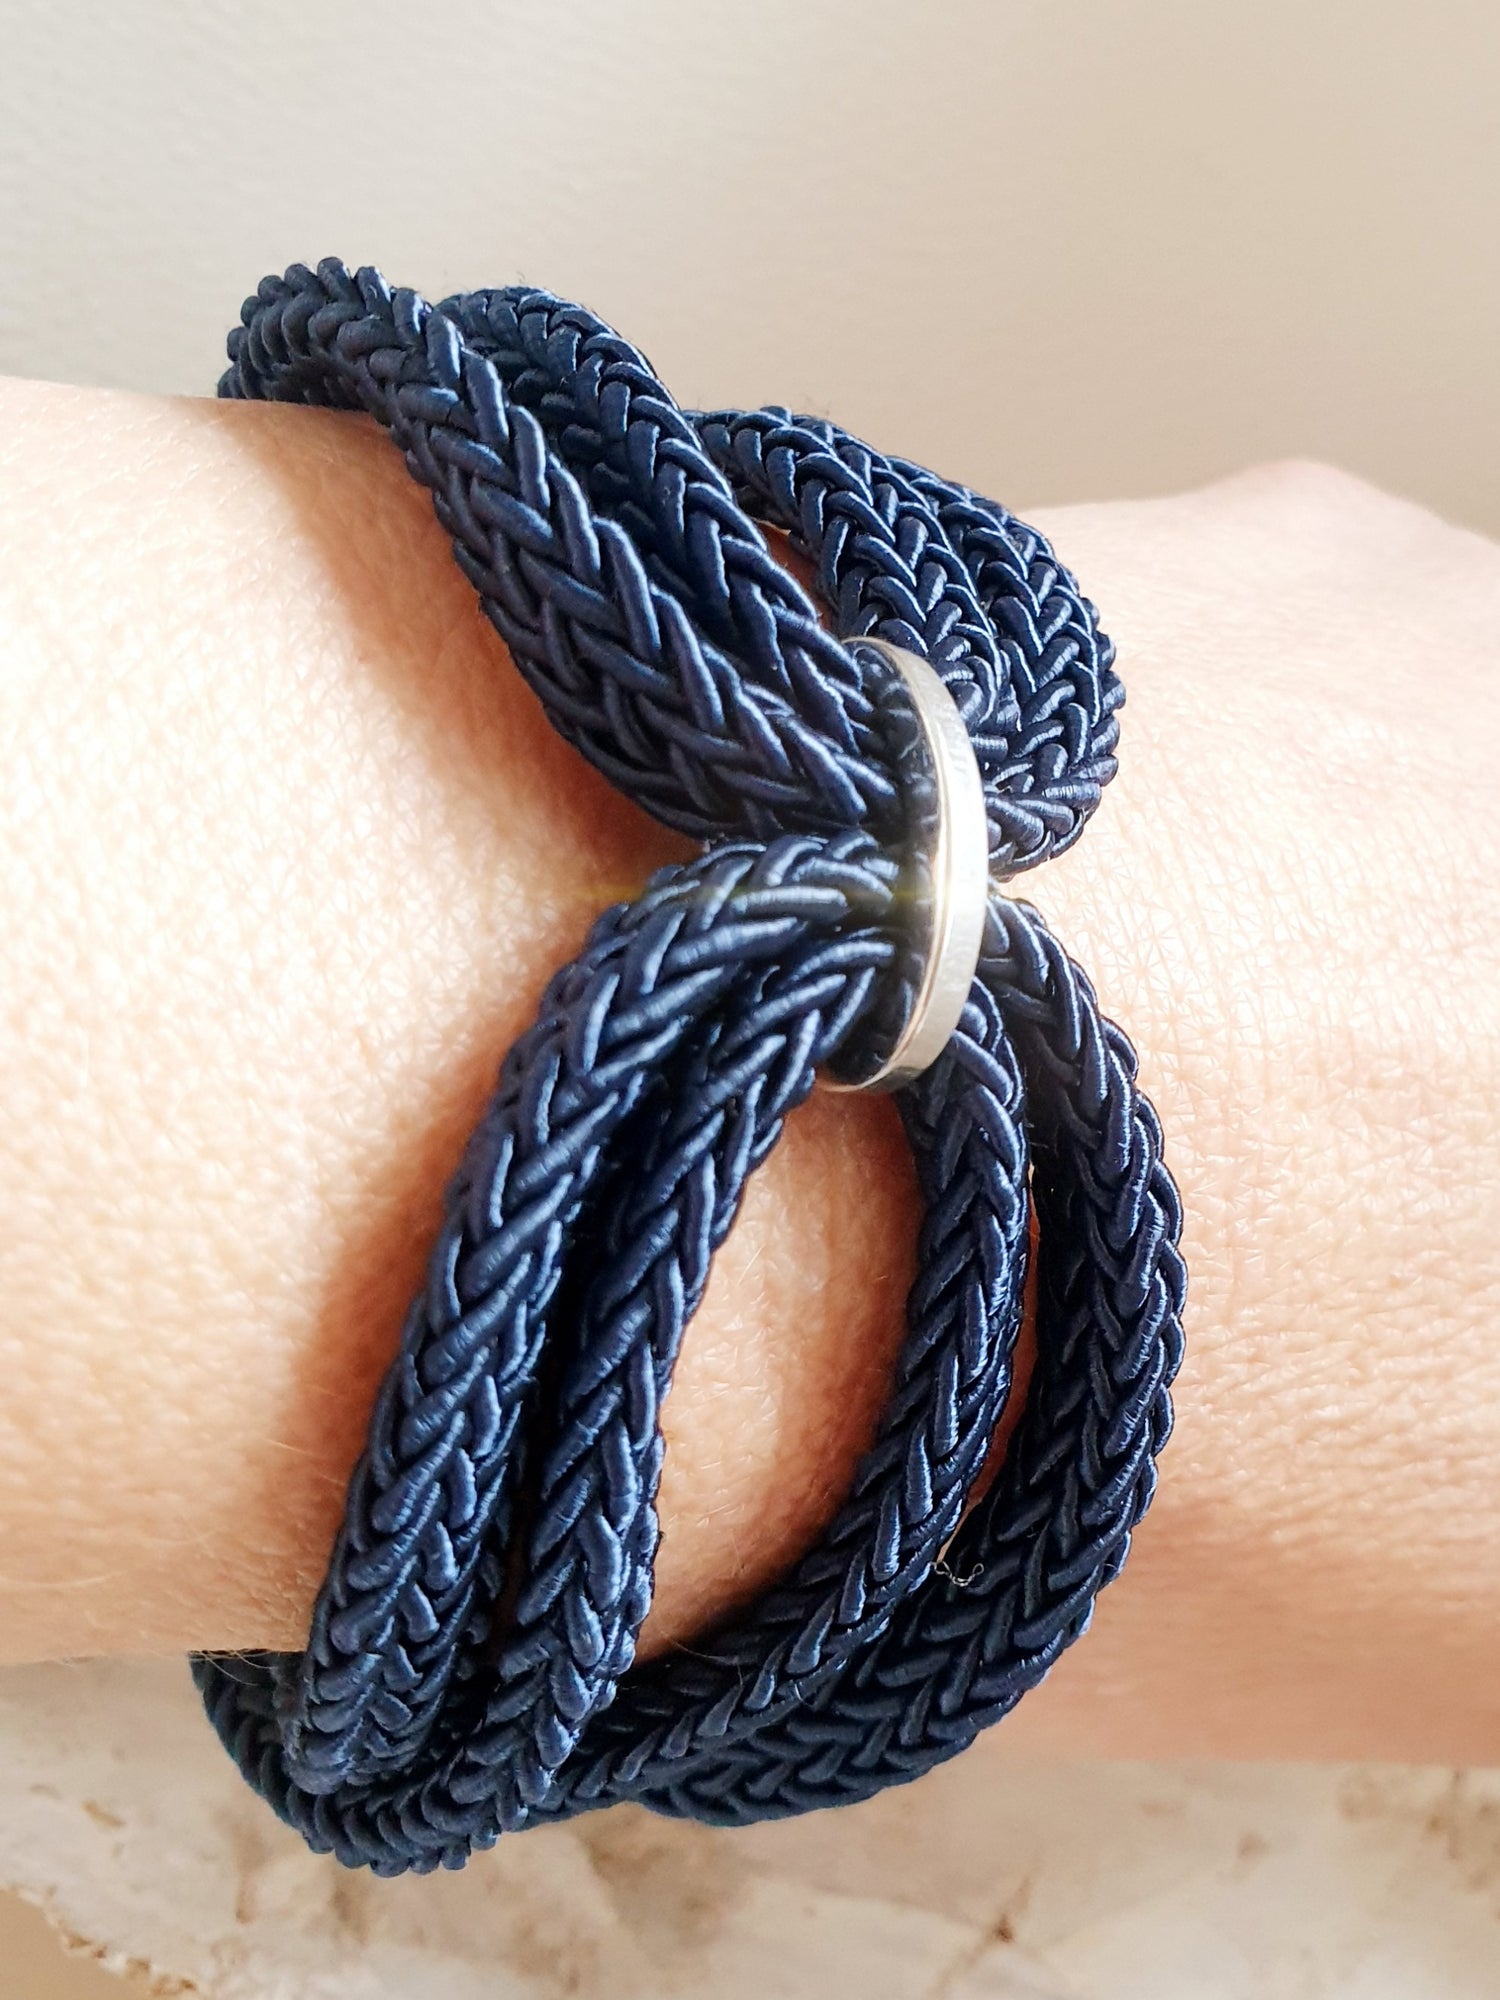 Armband aus textilem Seil in Blau an Arm